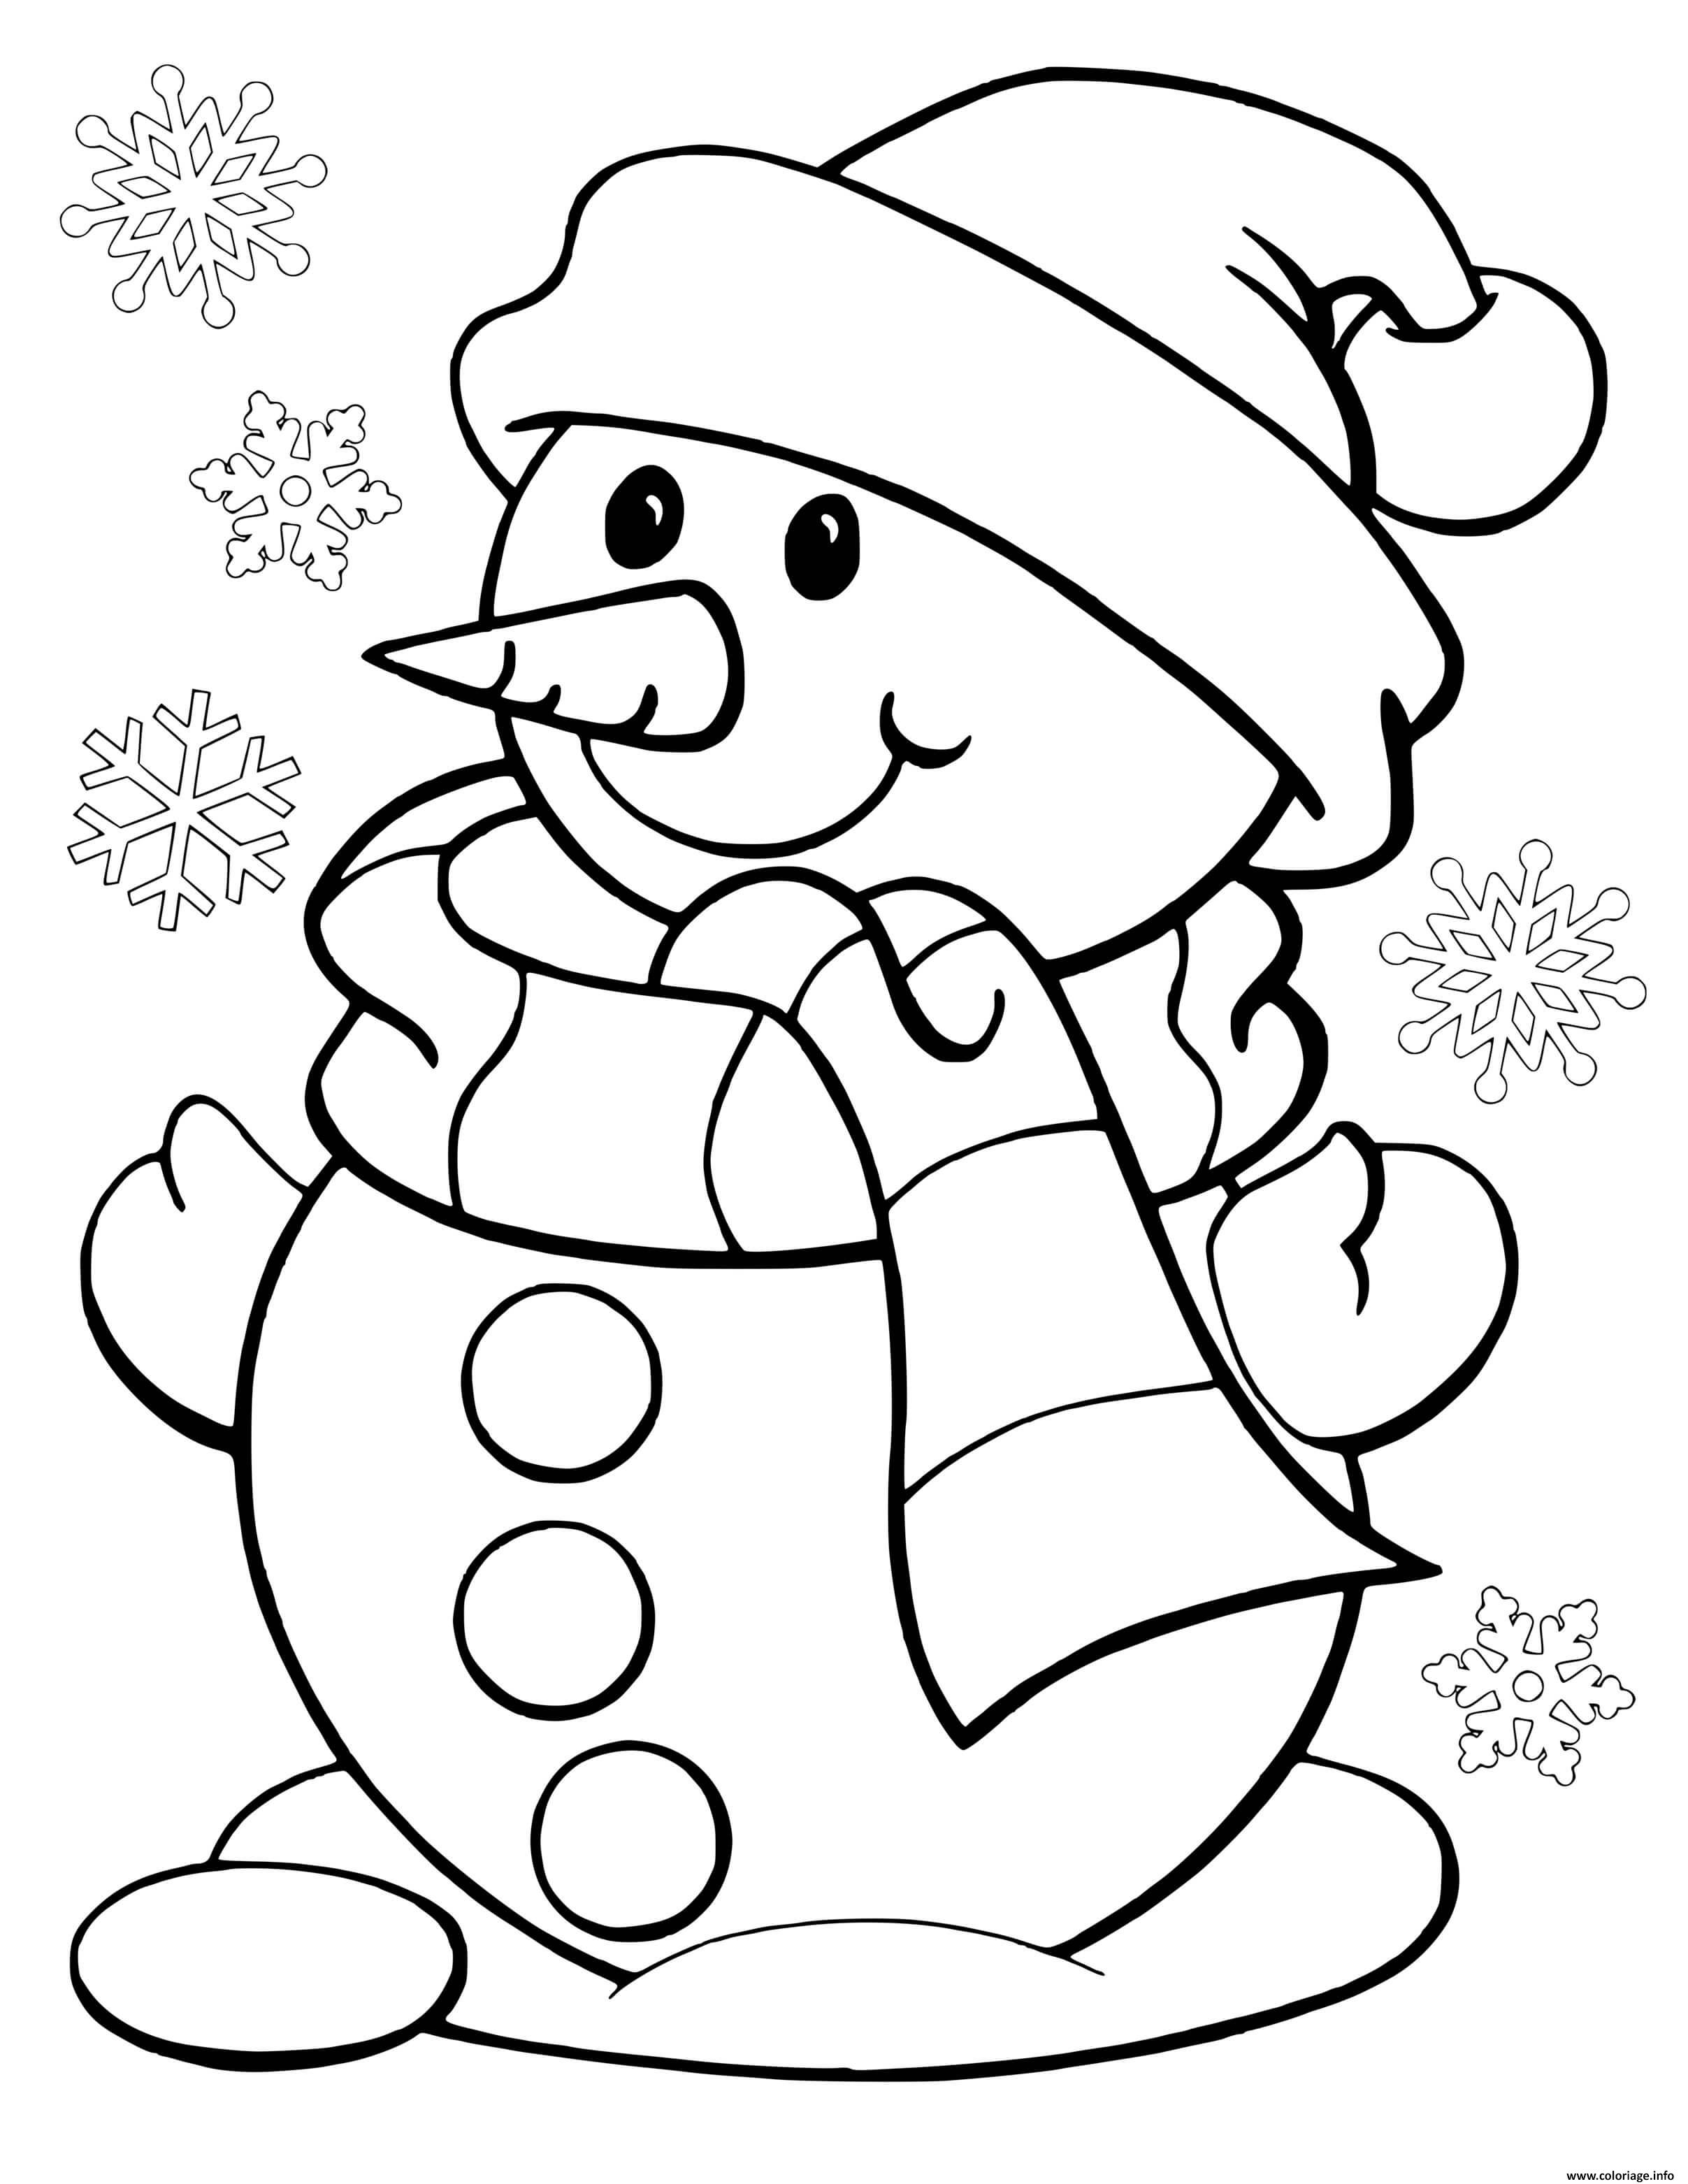 Dessin bonhomme de neige avec des flocons Coloriage Gratuit à Imprimer